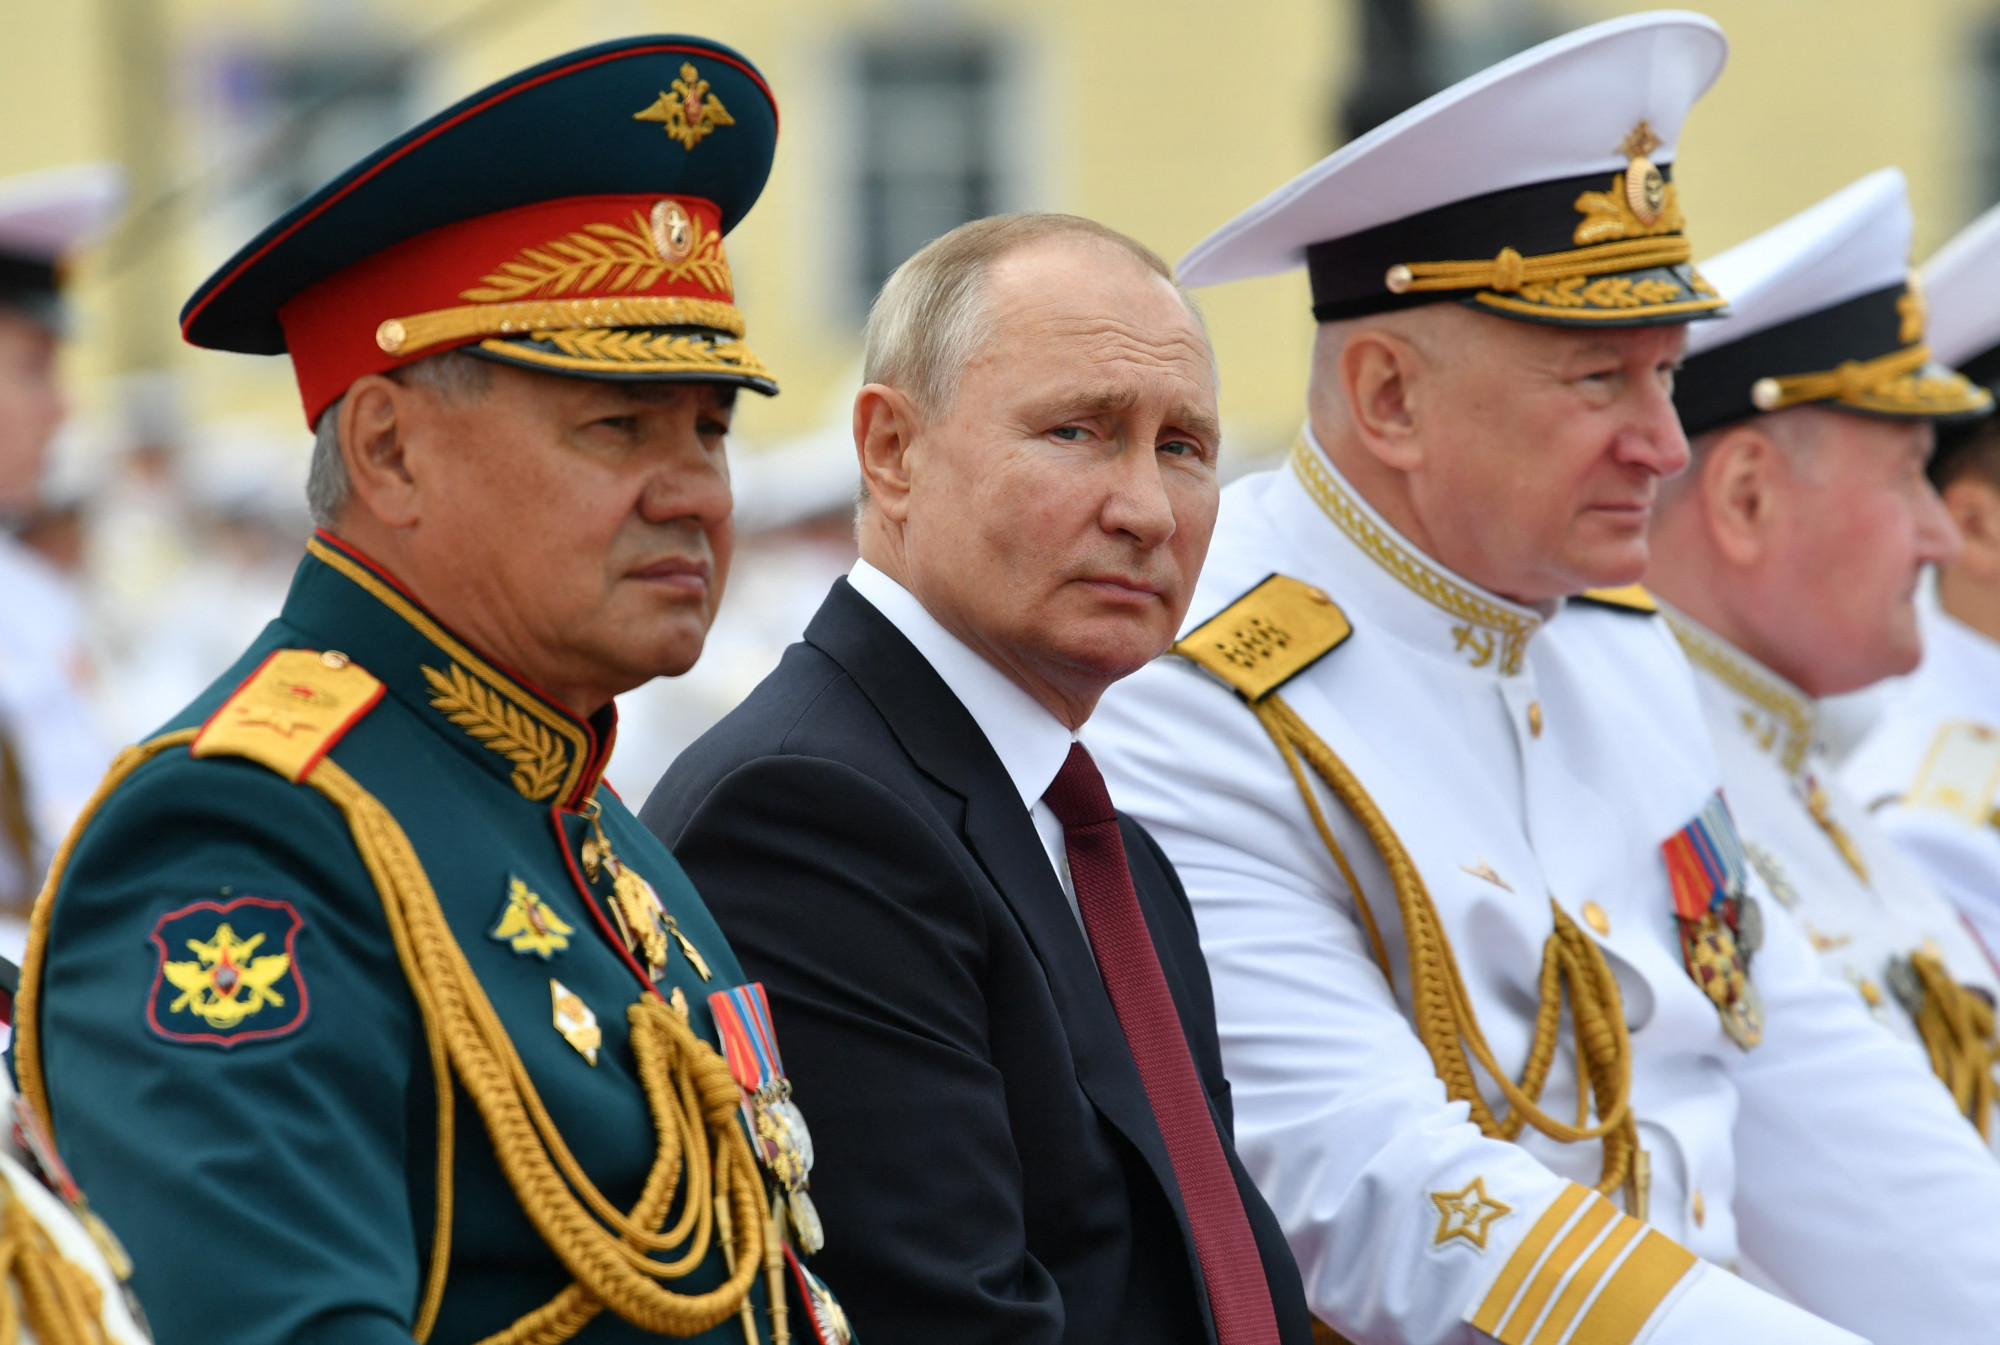 Az ukrán vezetés szerint képmutatás Putyin 1,5 napos fegyverszüneti ajánlata